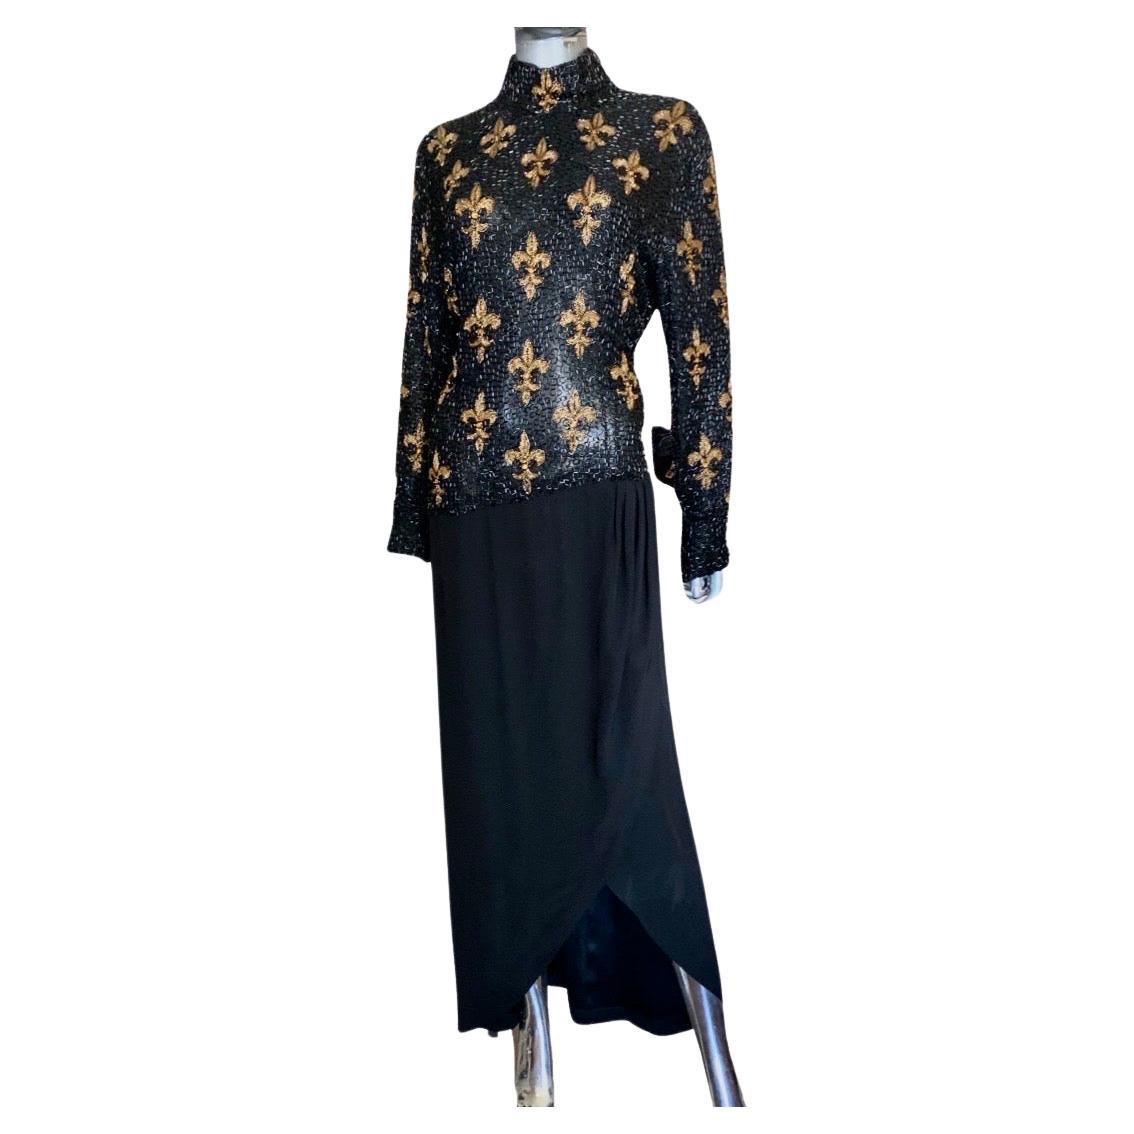 Bob Mackie Boutique Vintage Fleur de Lis Beaded black and Gold Dress Size 6/8 For Sale